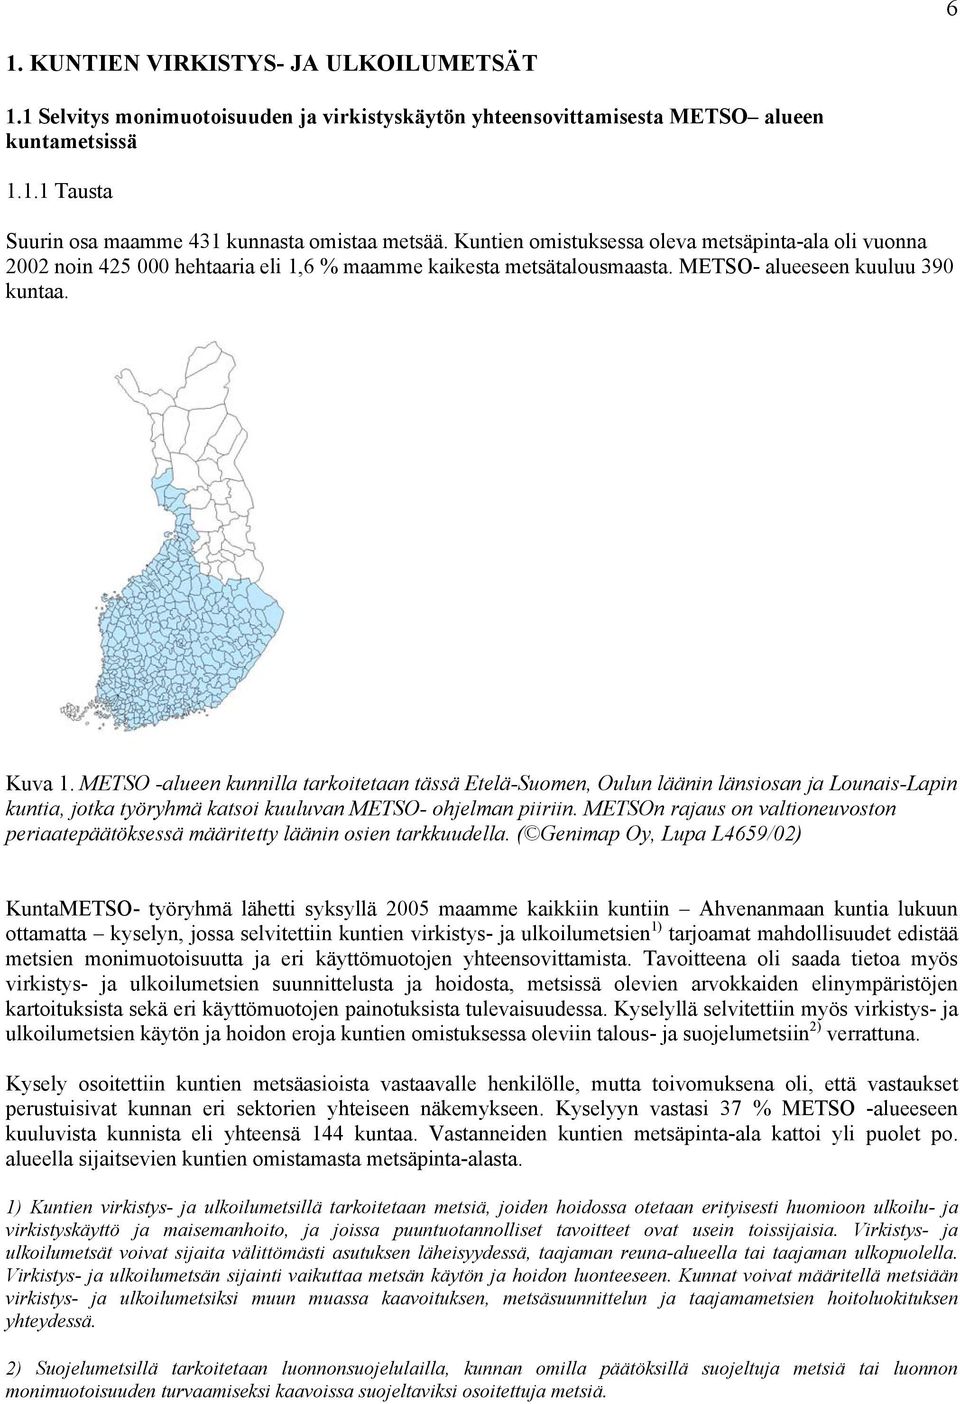 METSO -alueen kunnilla tarkoitetaan tässä Etelä-Suomen, Oulun läänin länsiosan ja Lounais-Lapin kuntia, jotka työryhmä katsoi kuuluvan METSO- ohjelman piiriin.